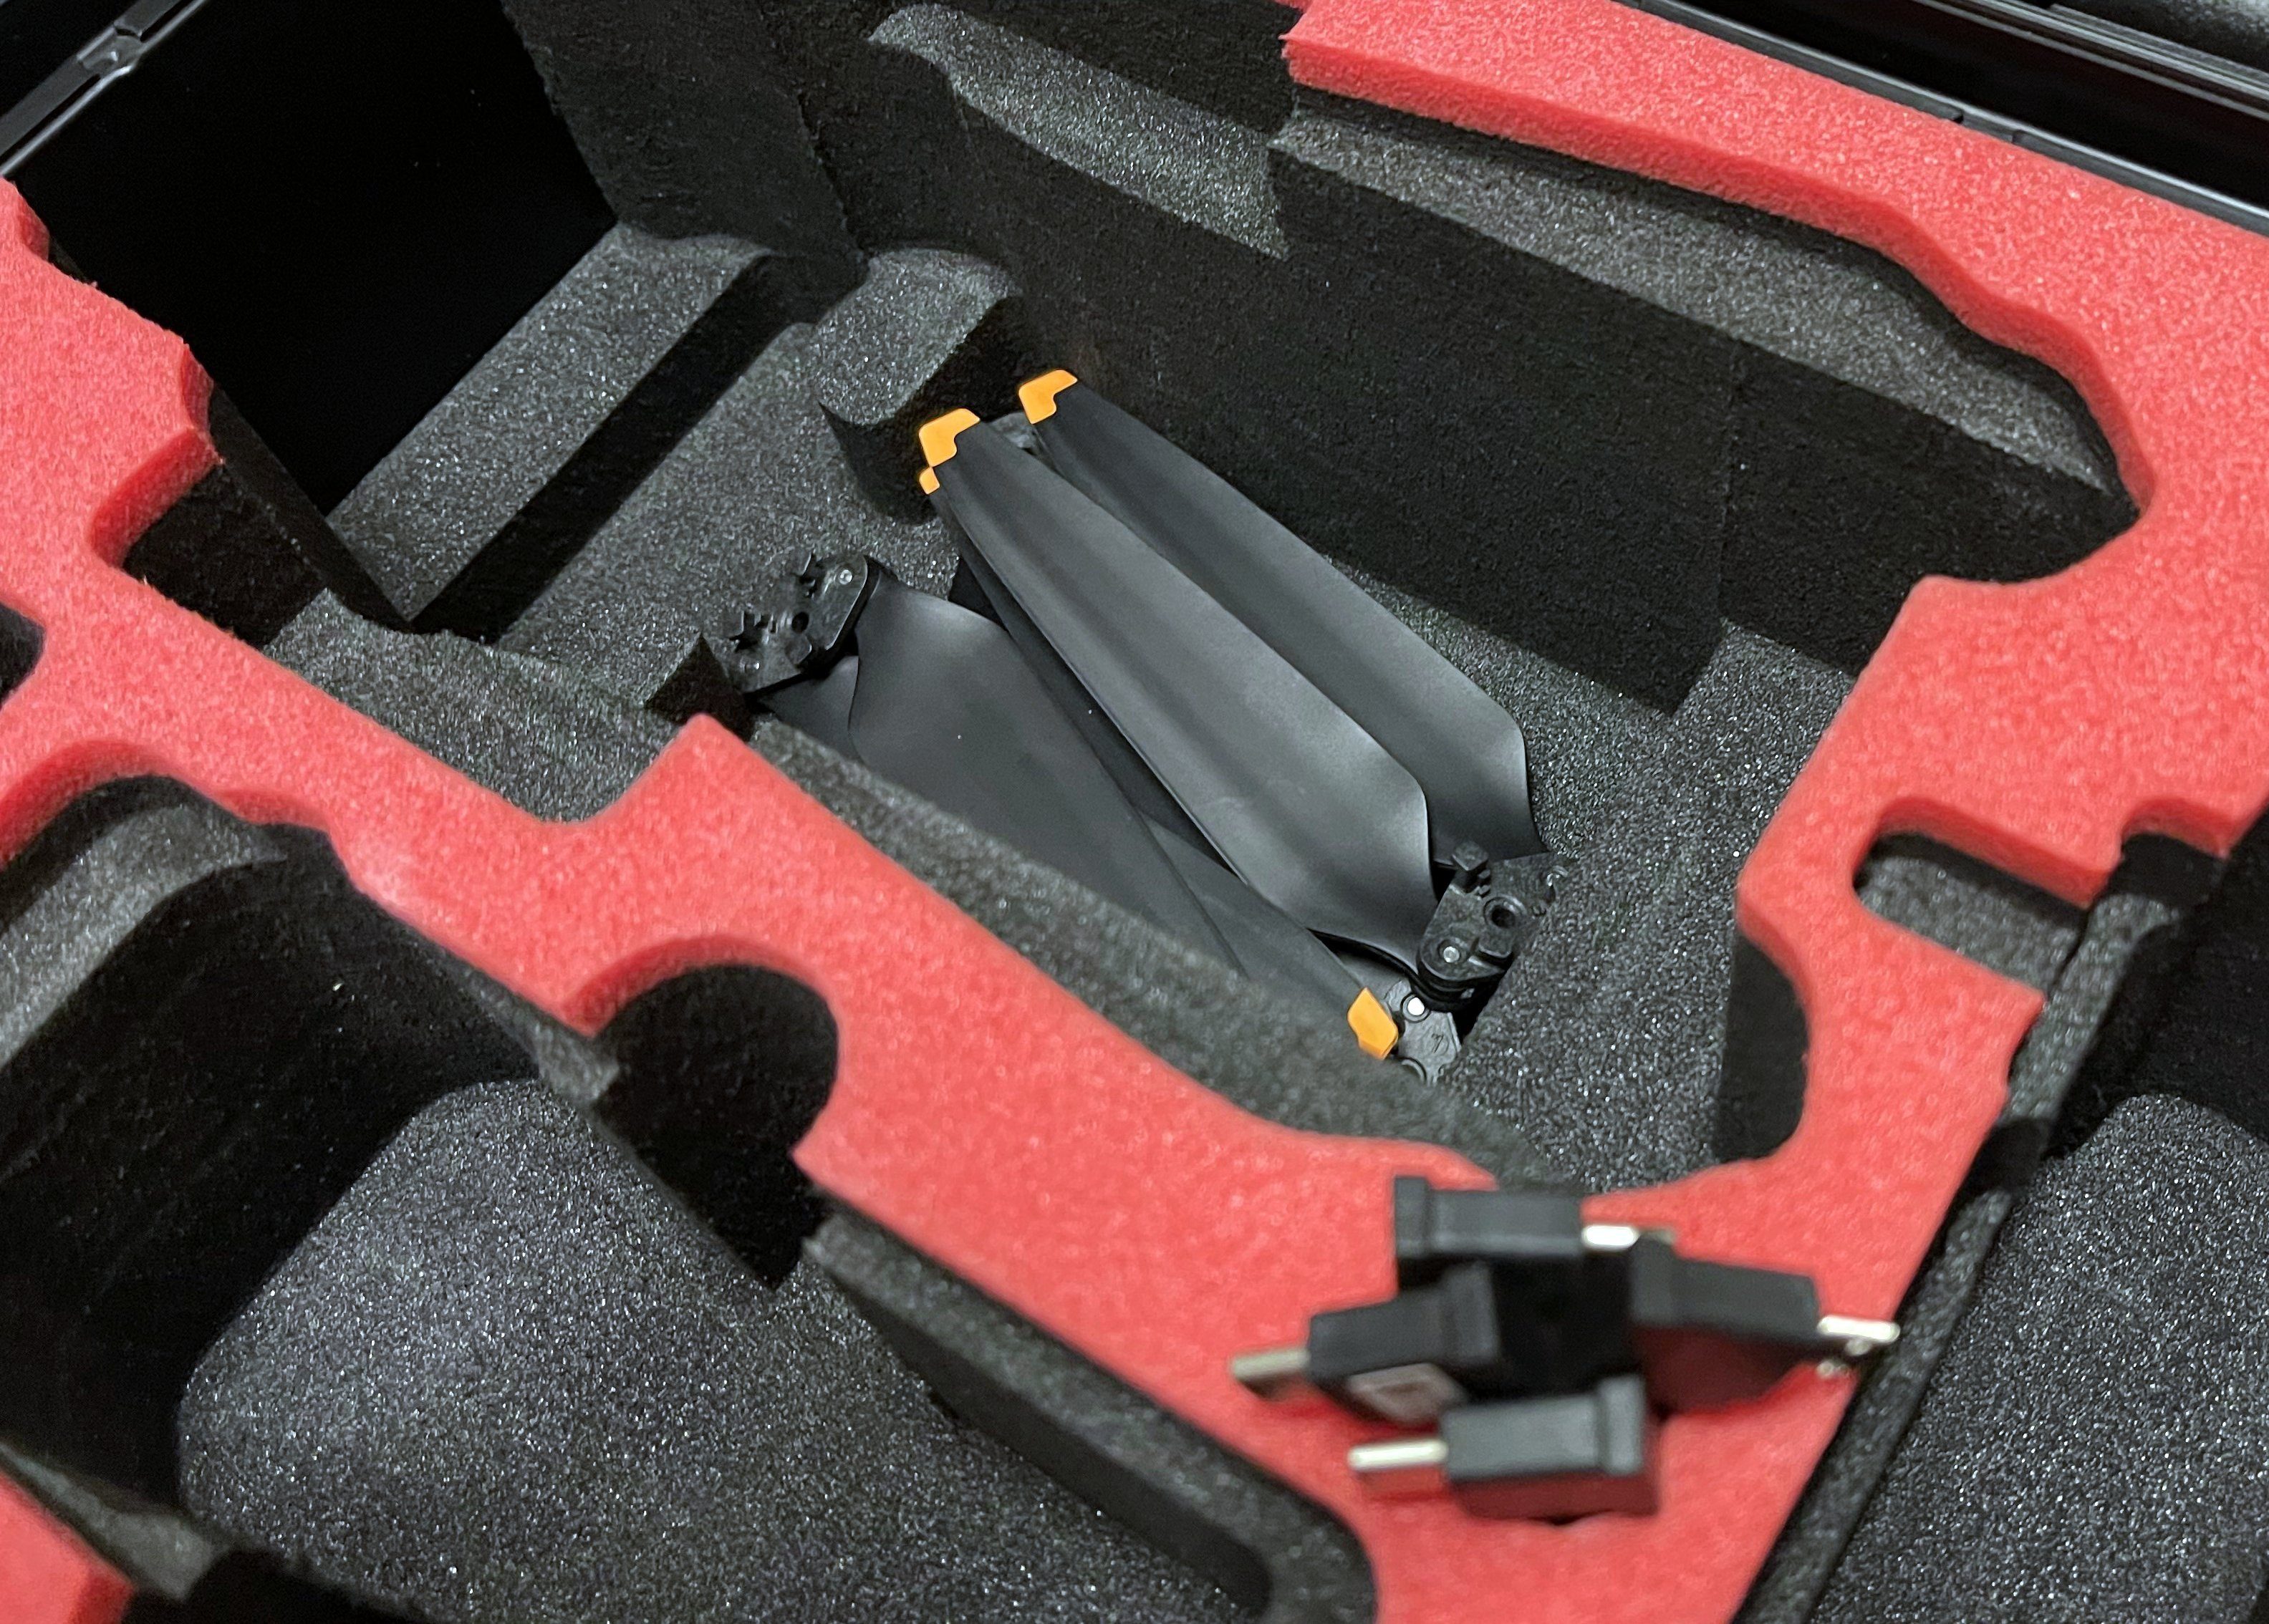 In Edition Kompakt für Mavic Koffer Vorbestellung Drohnen-Tasche - - MC-CASES Deutschland DJI 3 MC-CASES hergestellt -